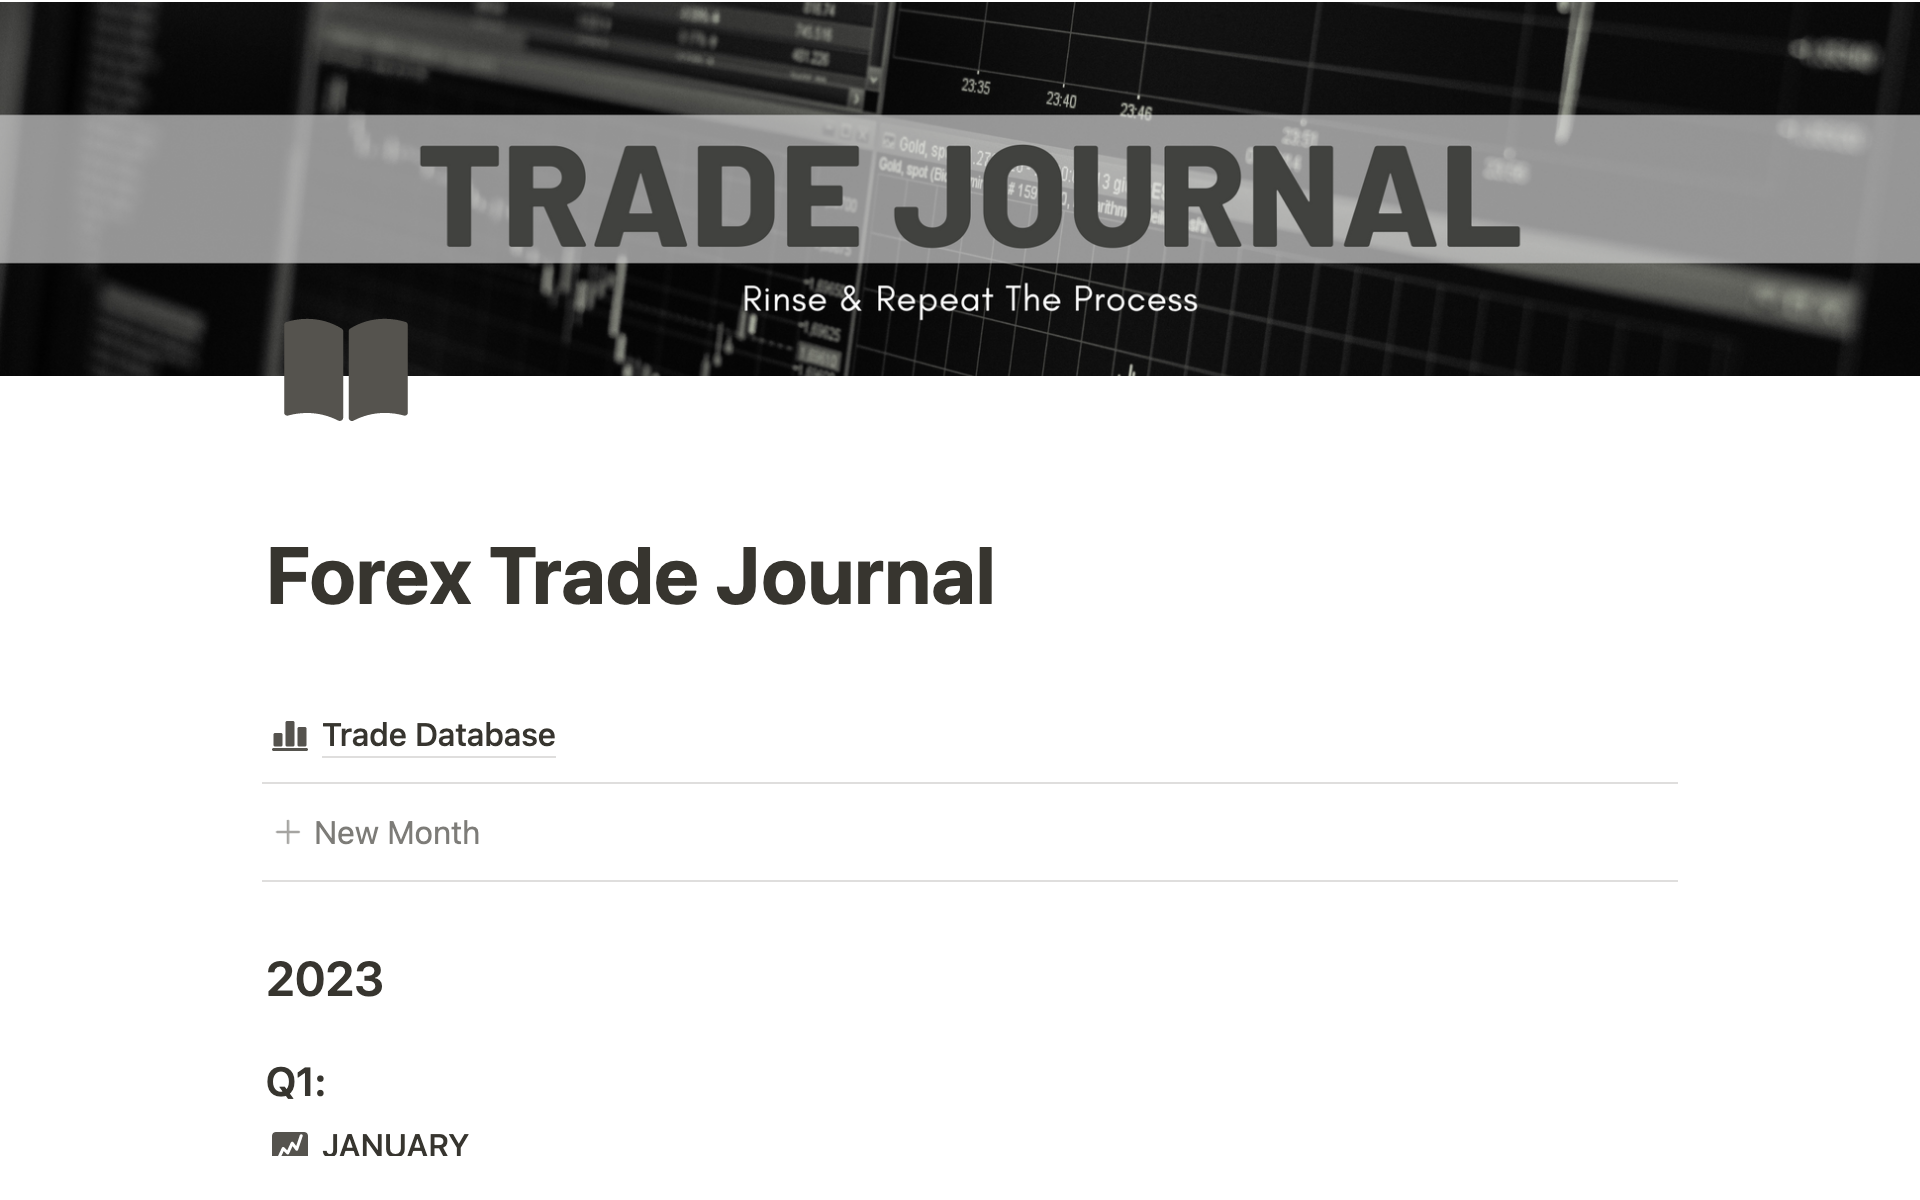 Vista previa de plantilla para Forex Trade Journal